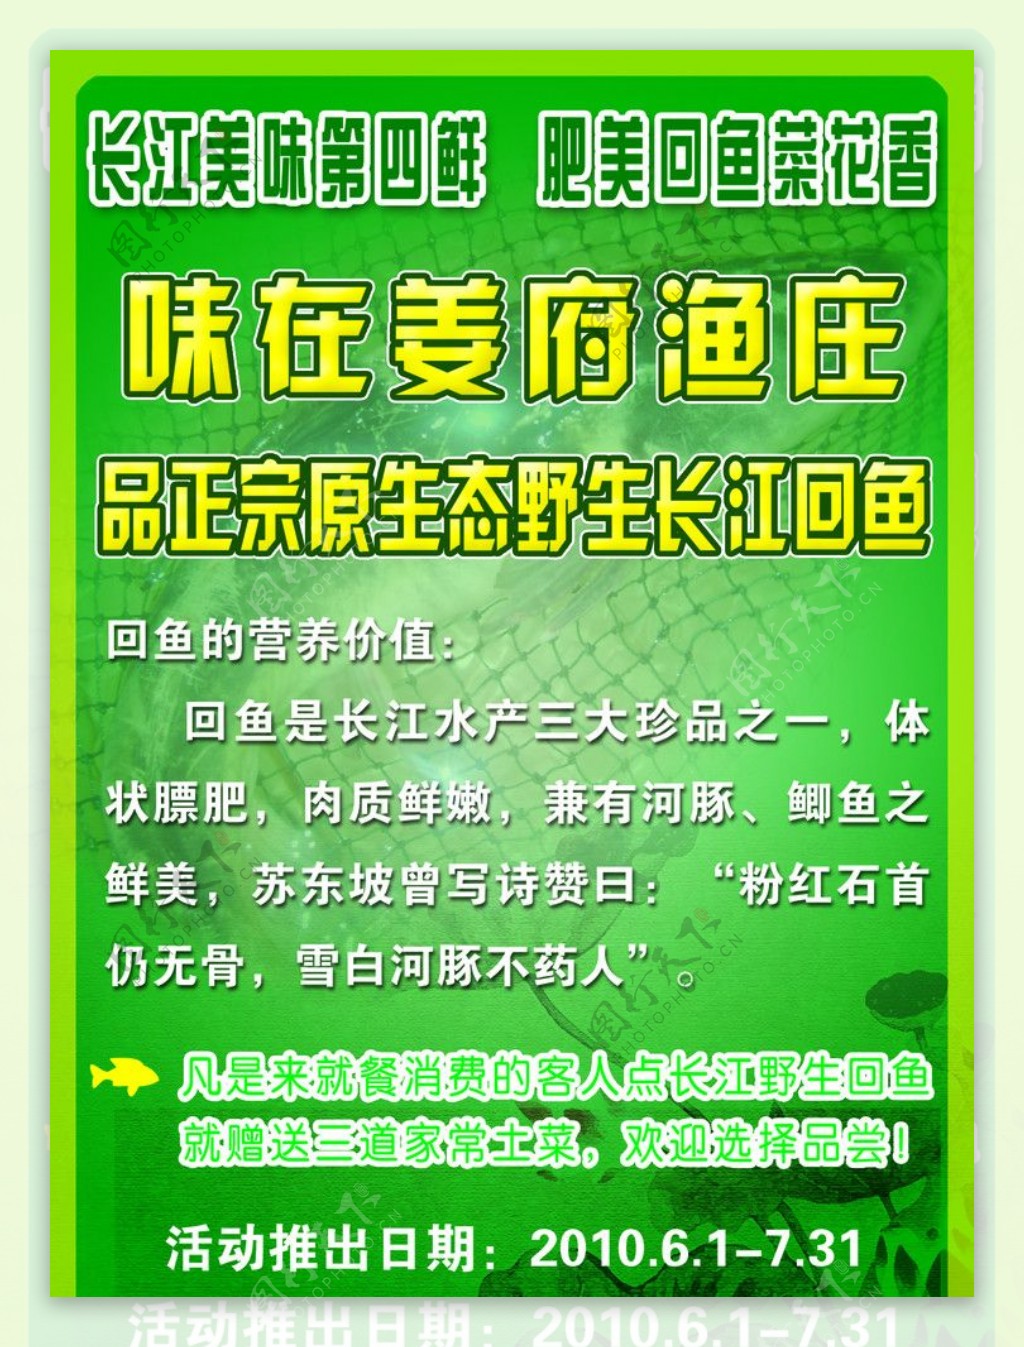 姜府渔庄菜单宣传广告图片